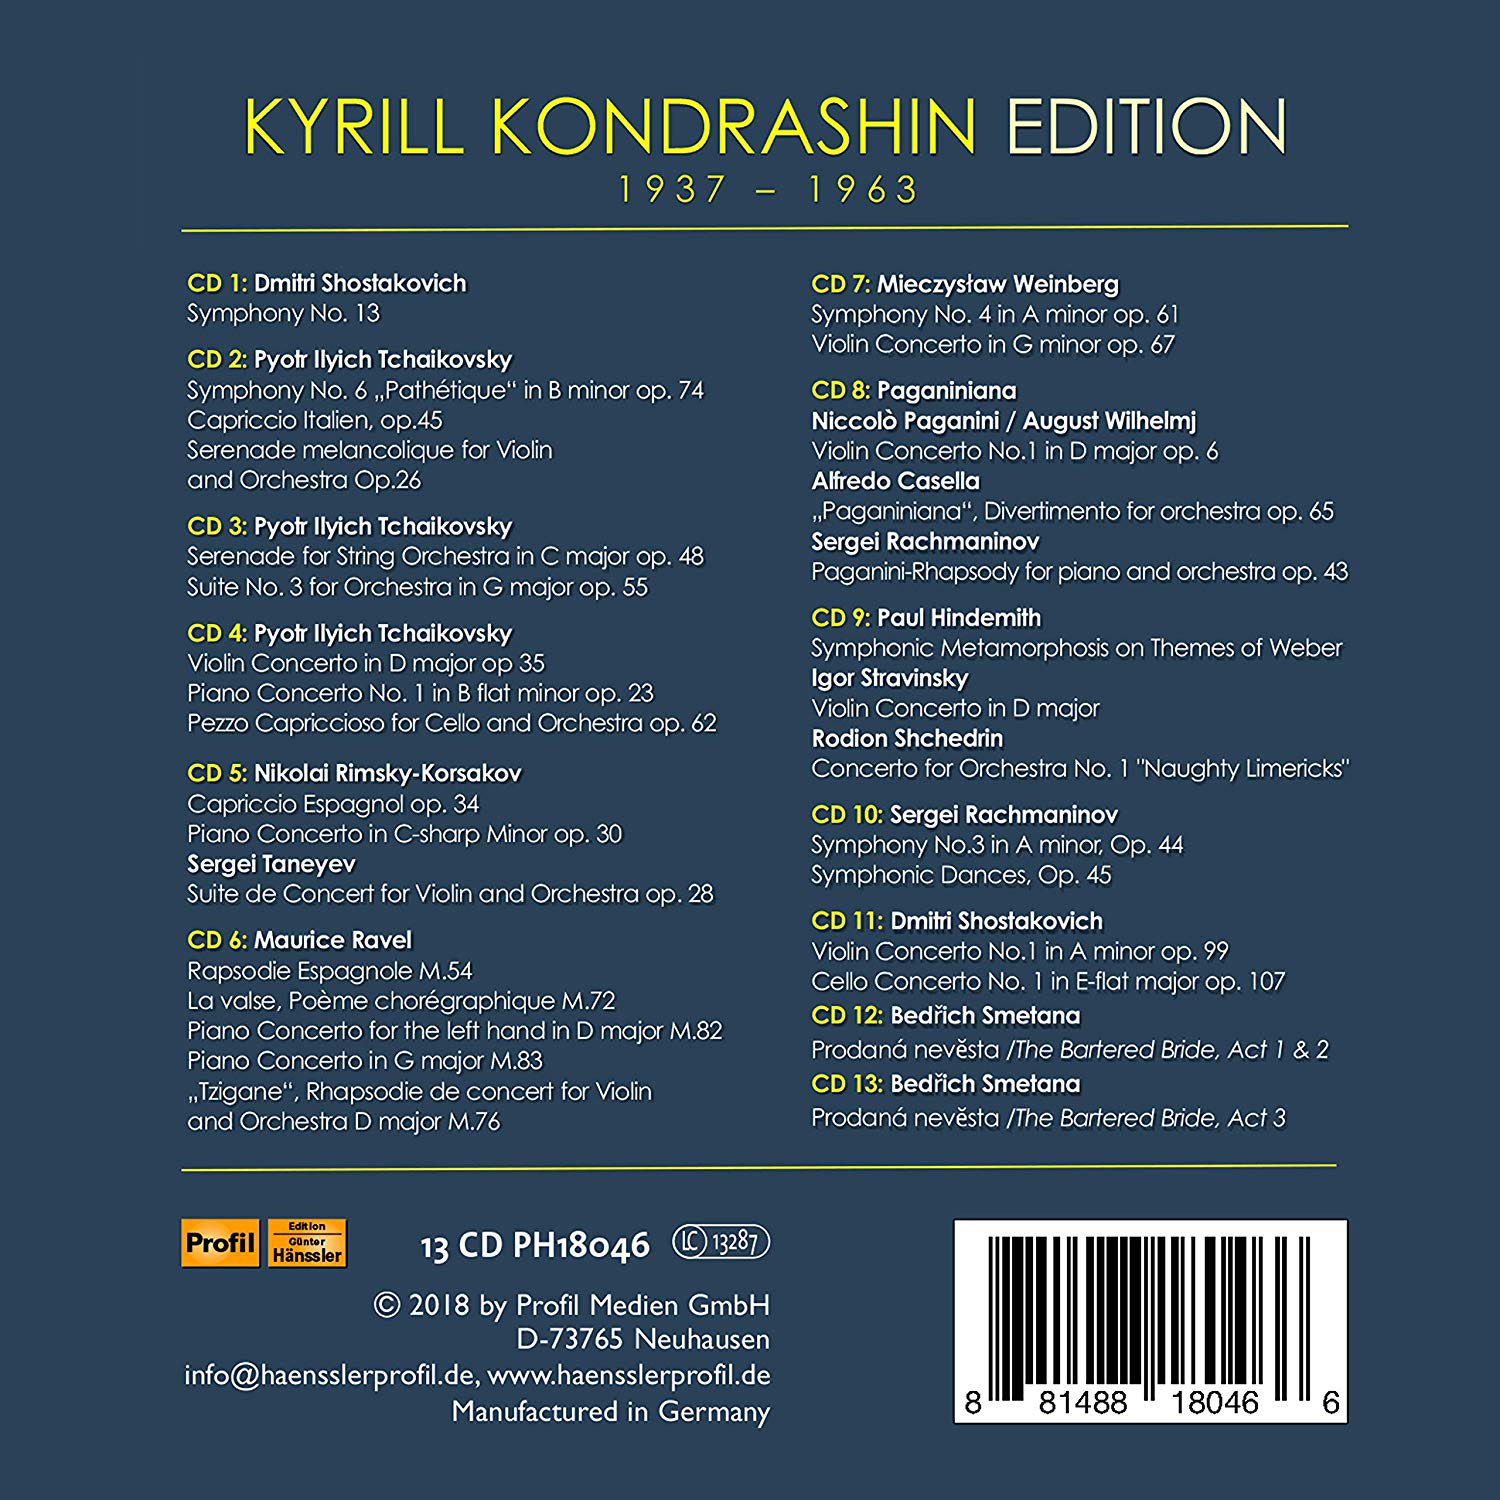 키릴 콘드라신 에디션 (Kyrill Kondrashin Edition)